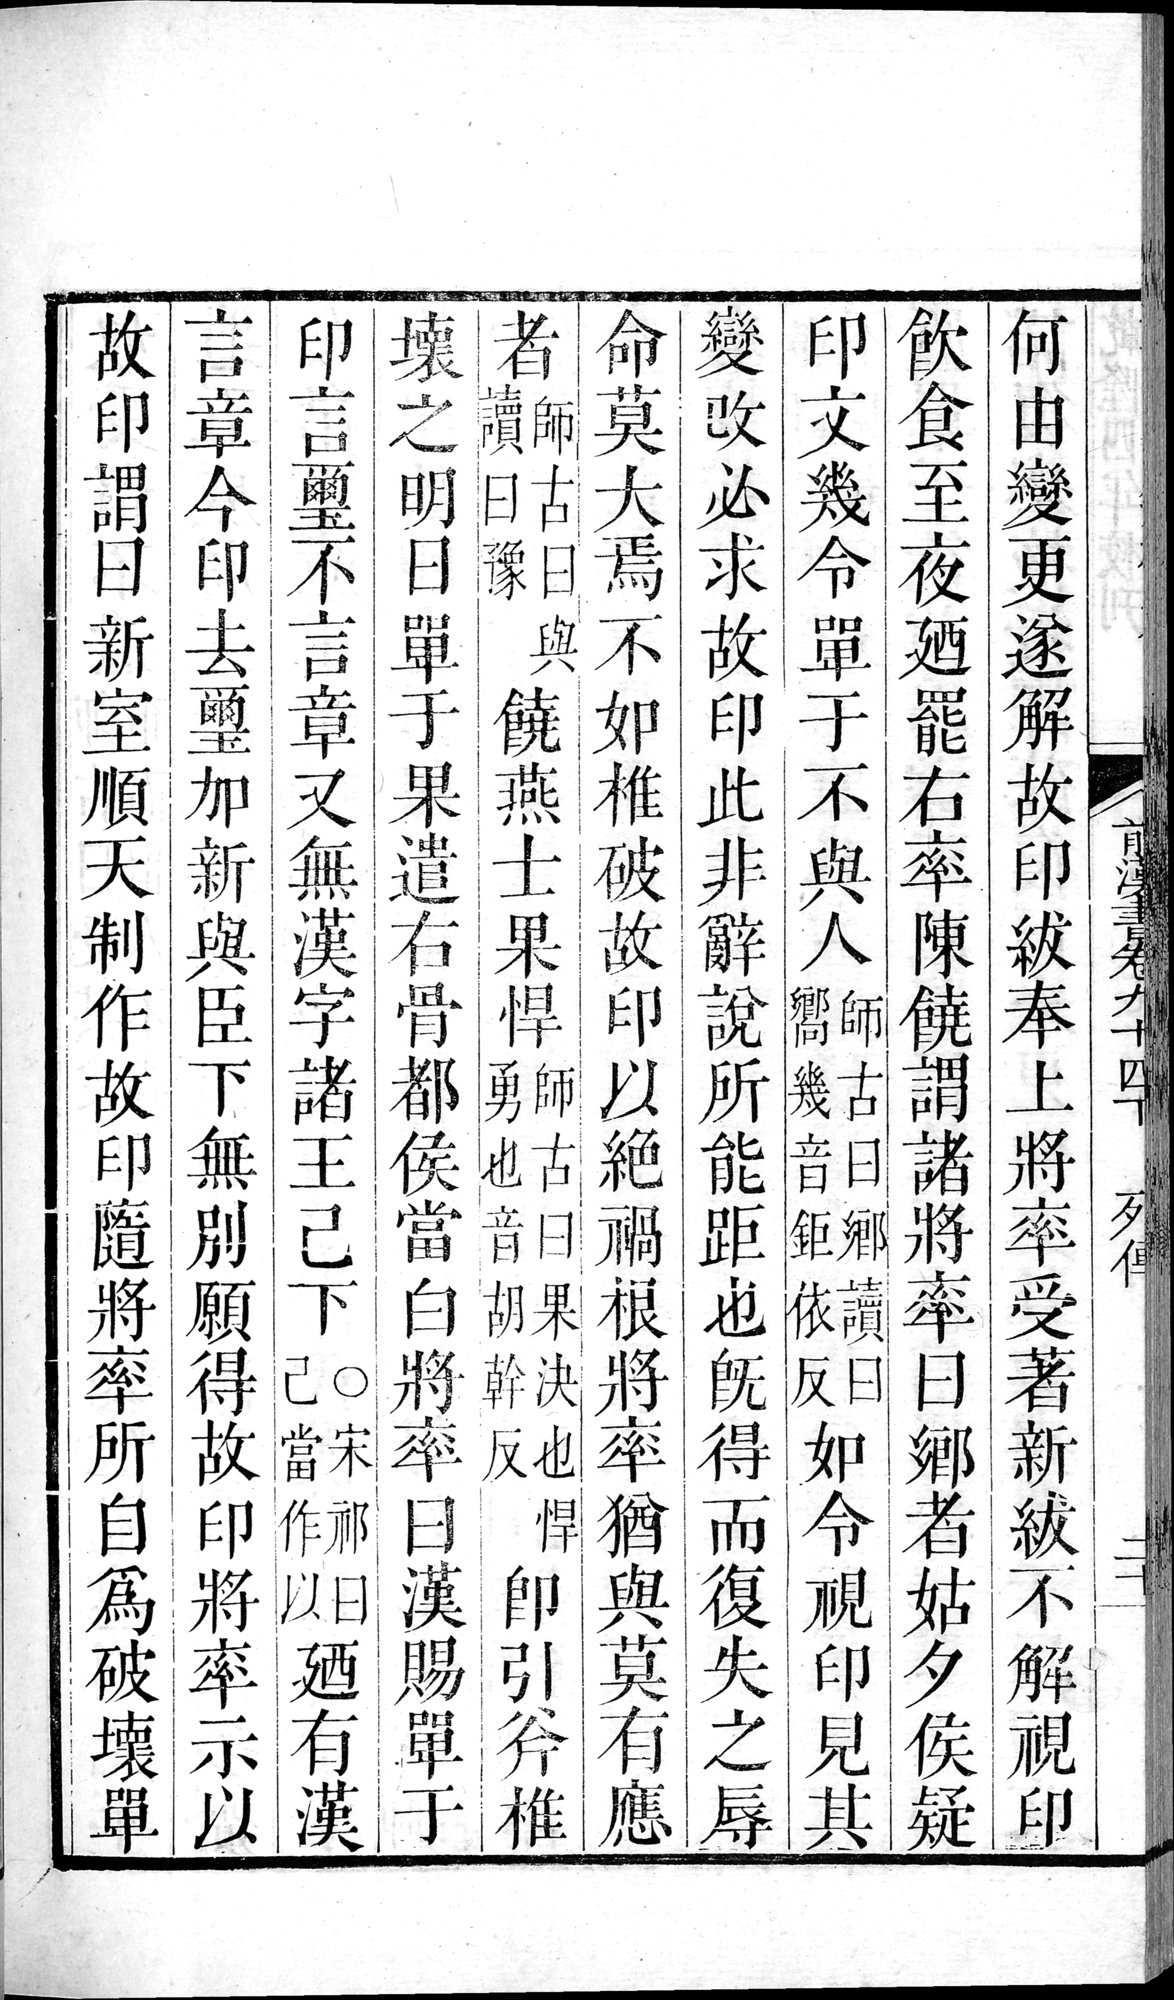 前漢書 : vol.94 bottom / Page 40 (Grayscale High Resolution Image)